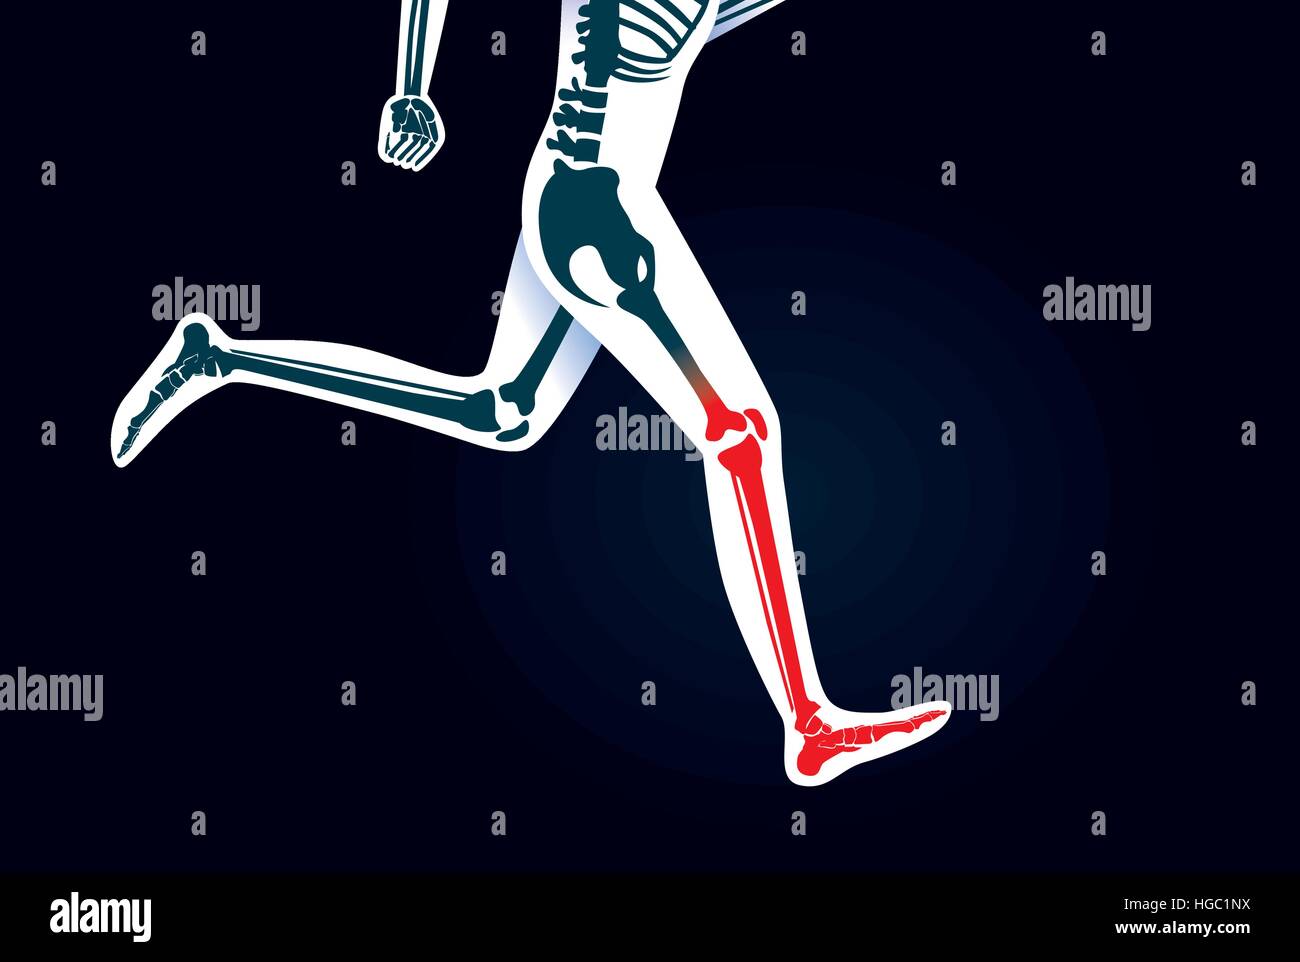 Gamba umana osso e il piede mentre esegui hanno un segnale rosso. Illustrazione Vettoriale